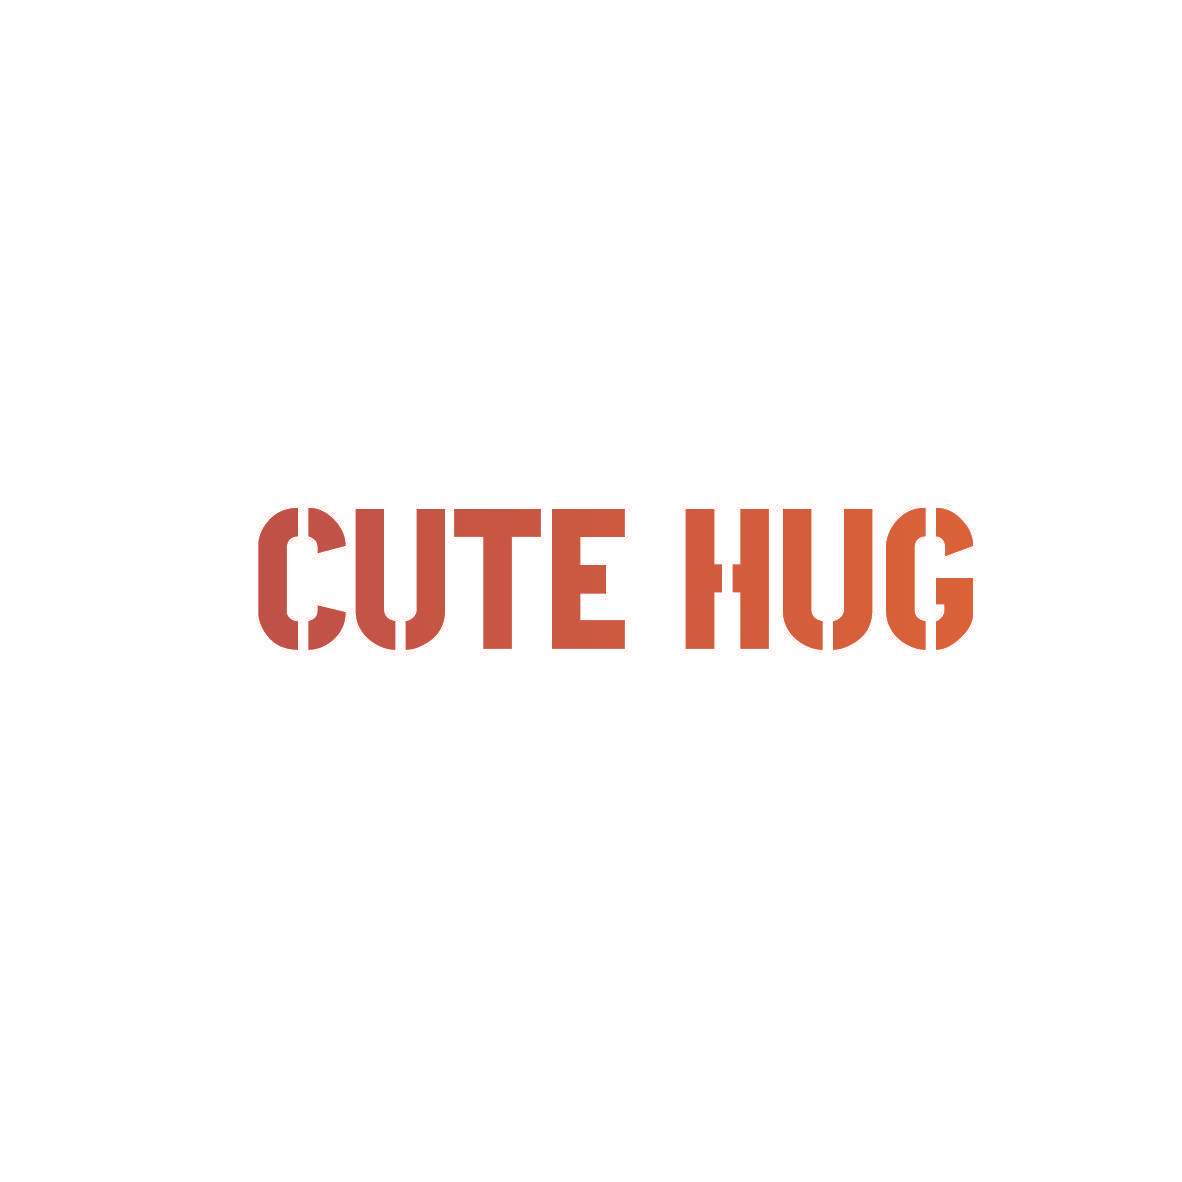 CUTE HUG